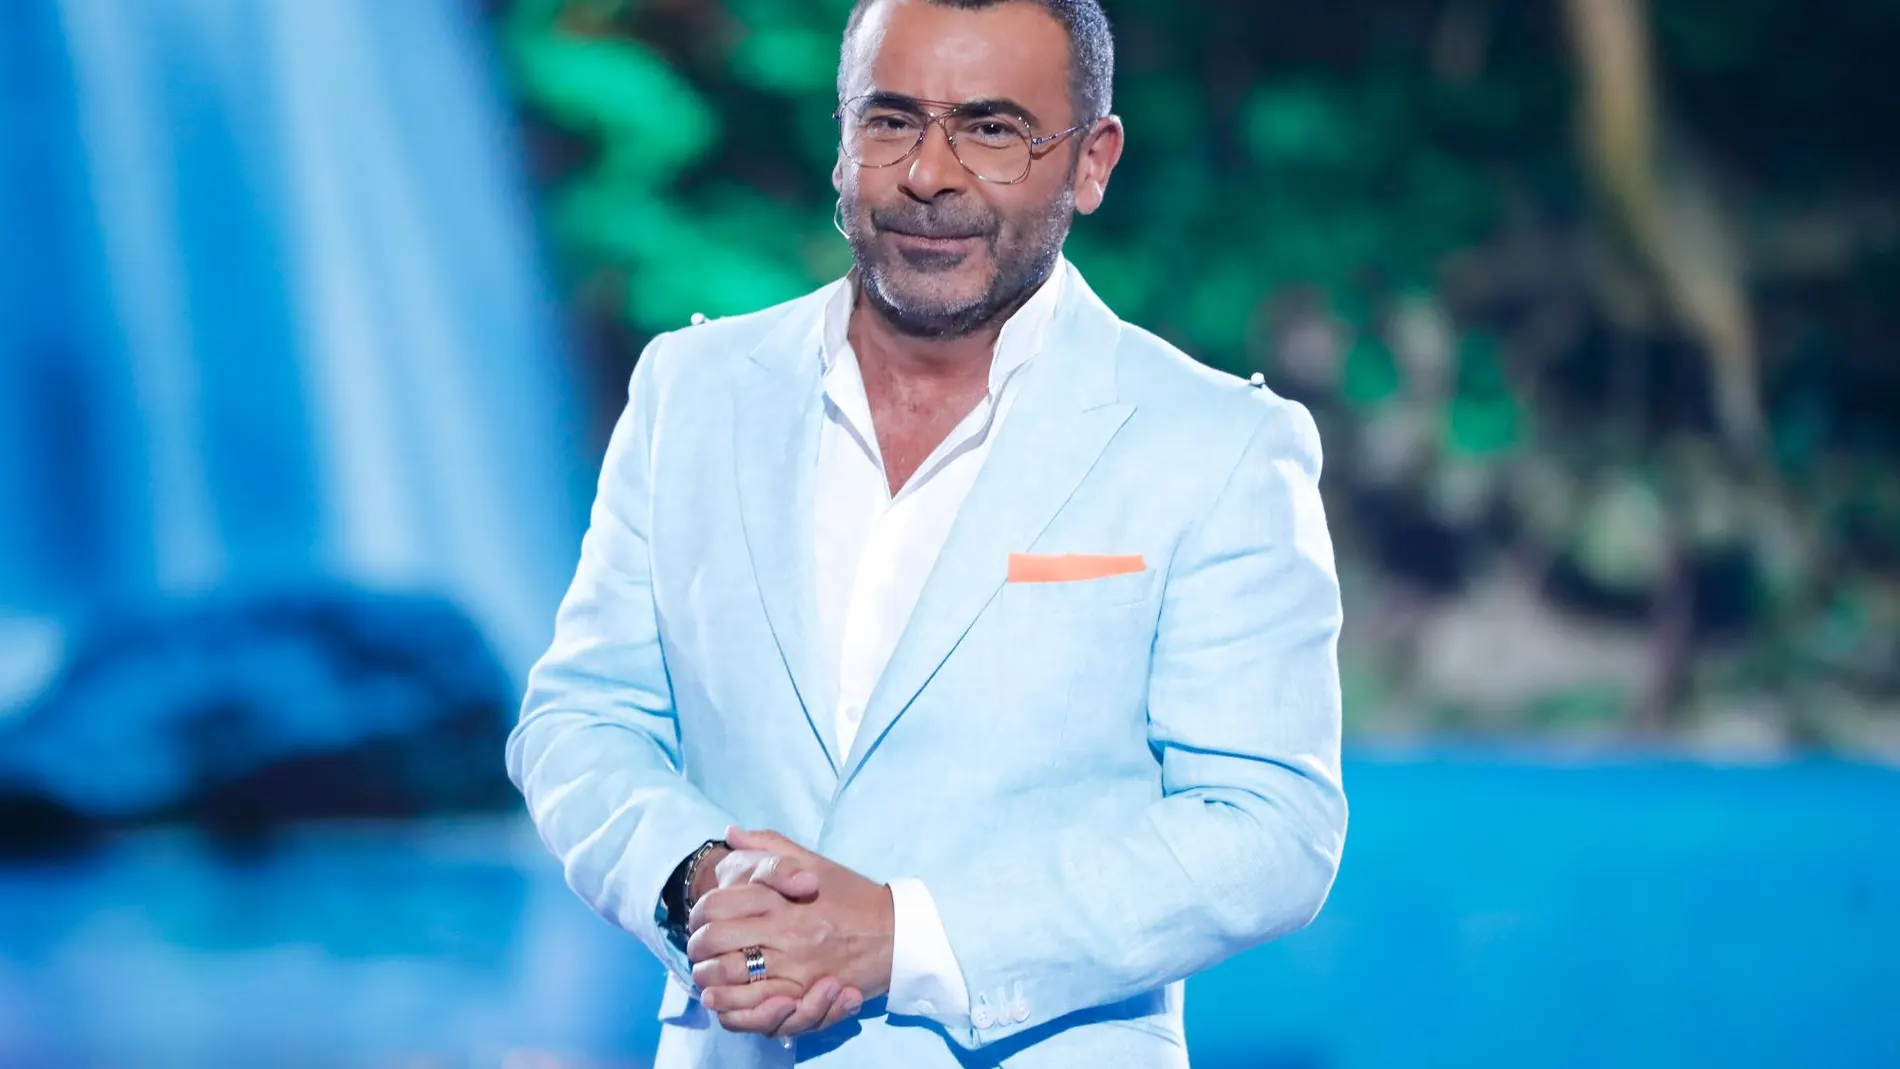 El presentador Jorge Javier Vázquez, durante la emisión de Supervivientes